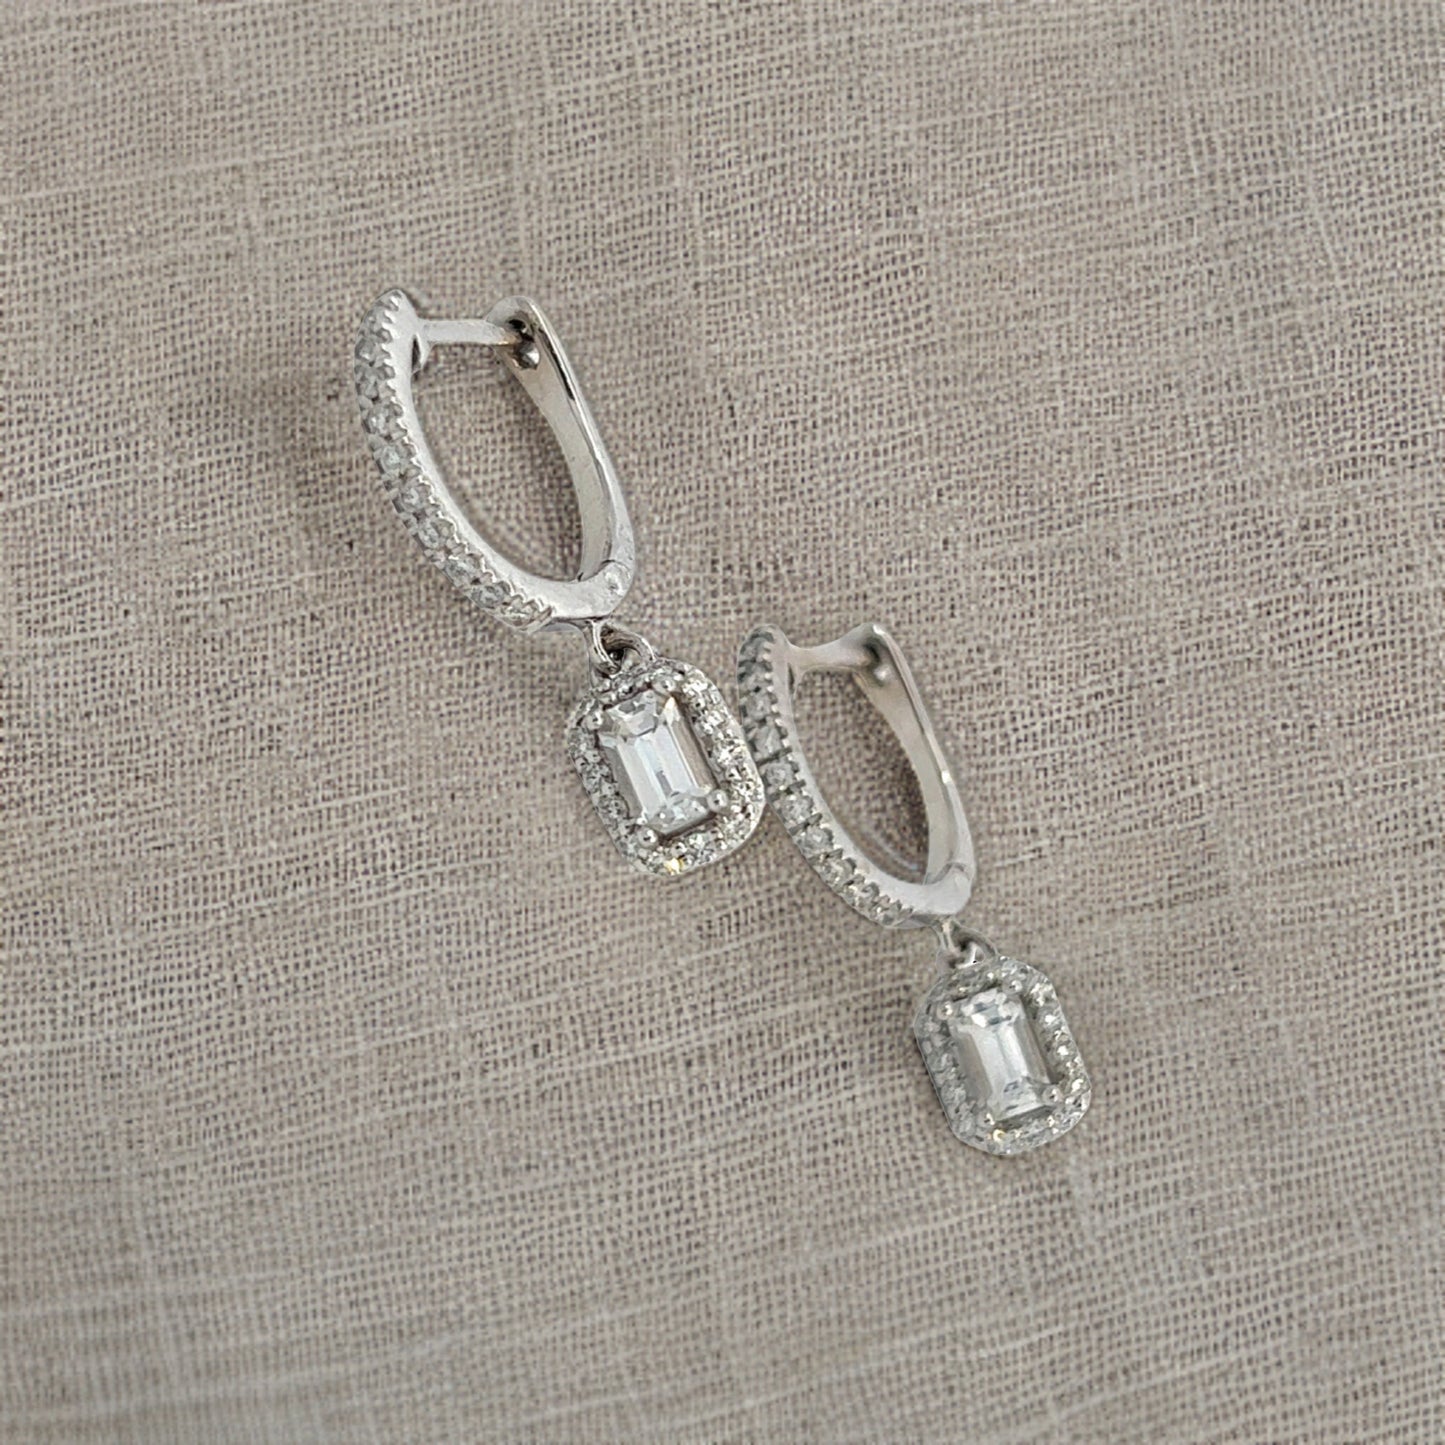 Natural Sapphire Diamond Dangle Earrings 14k WG 1.16 TCW Certified $4,250 211177 - Certified Fine Jewelry